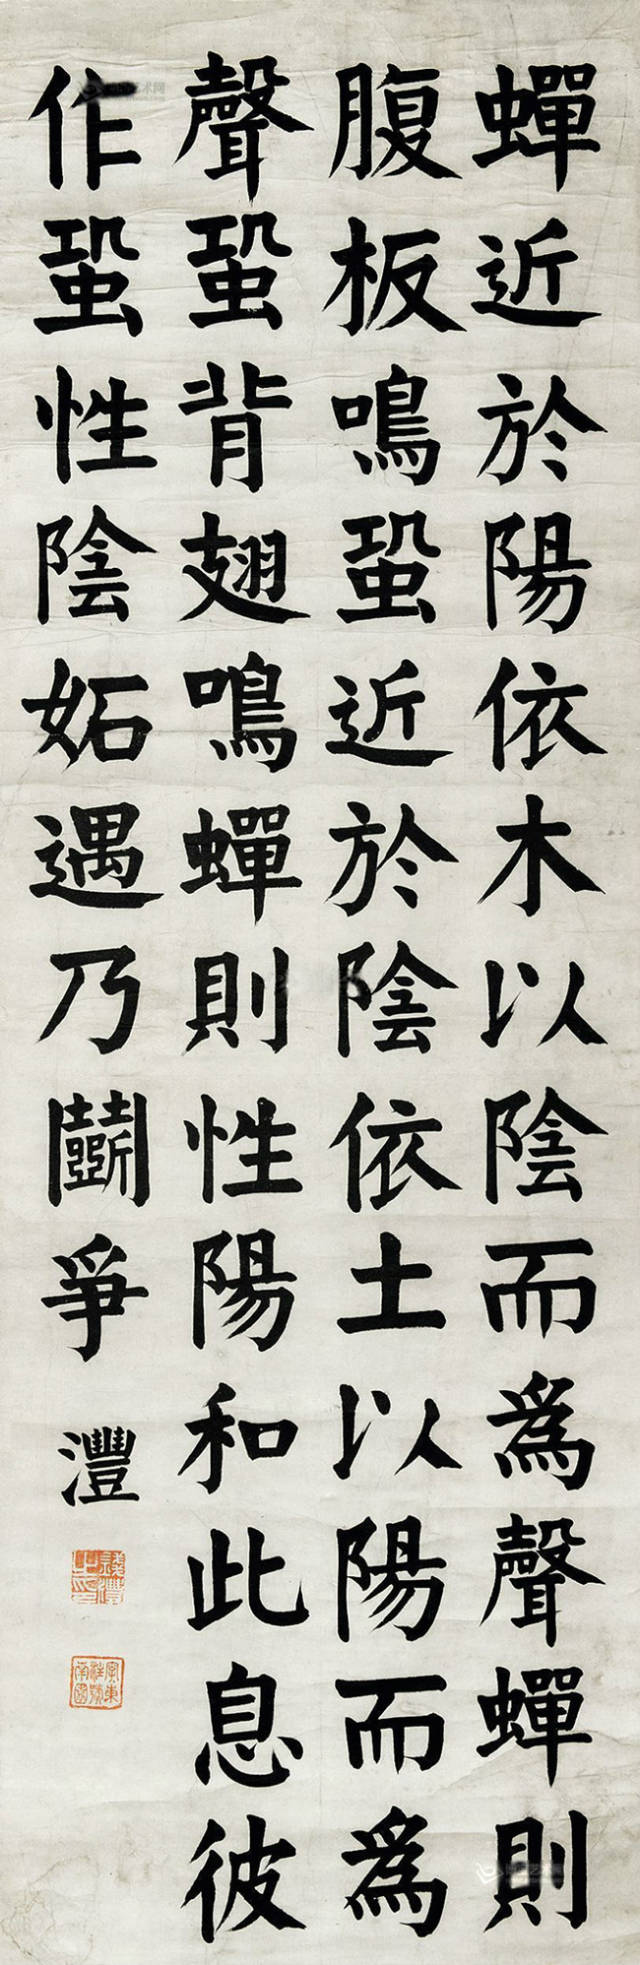 民国时代出版的学生习字帖中,曾有《钱南园楷书墨迹》